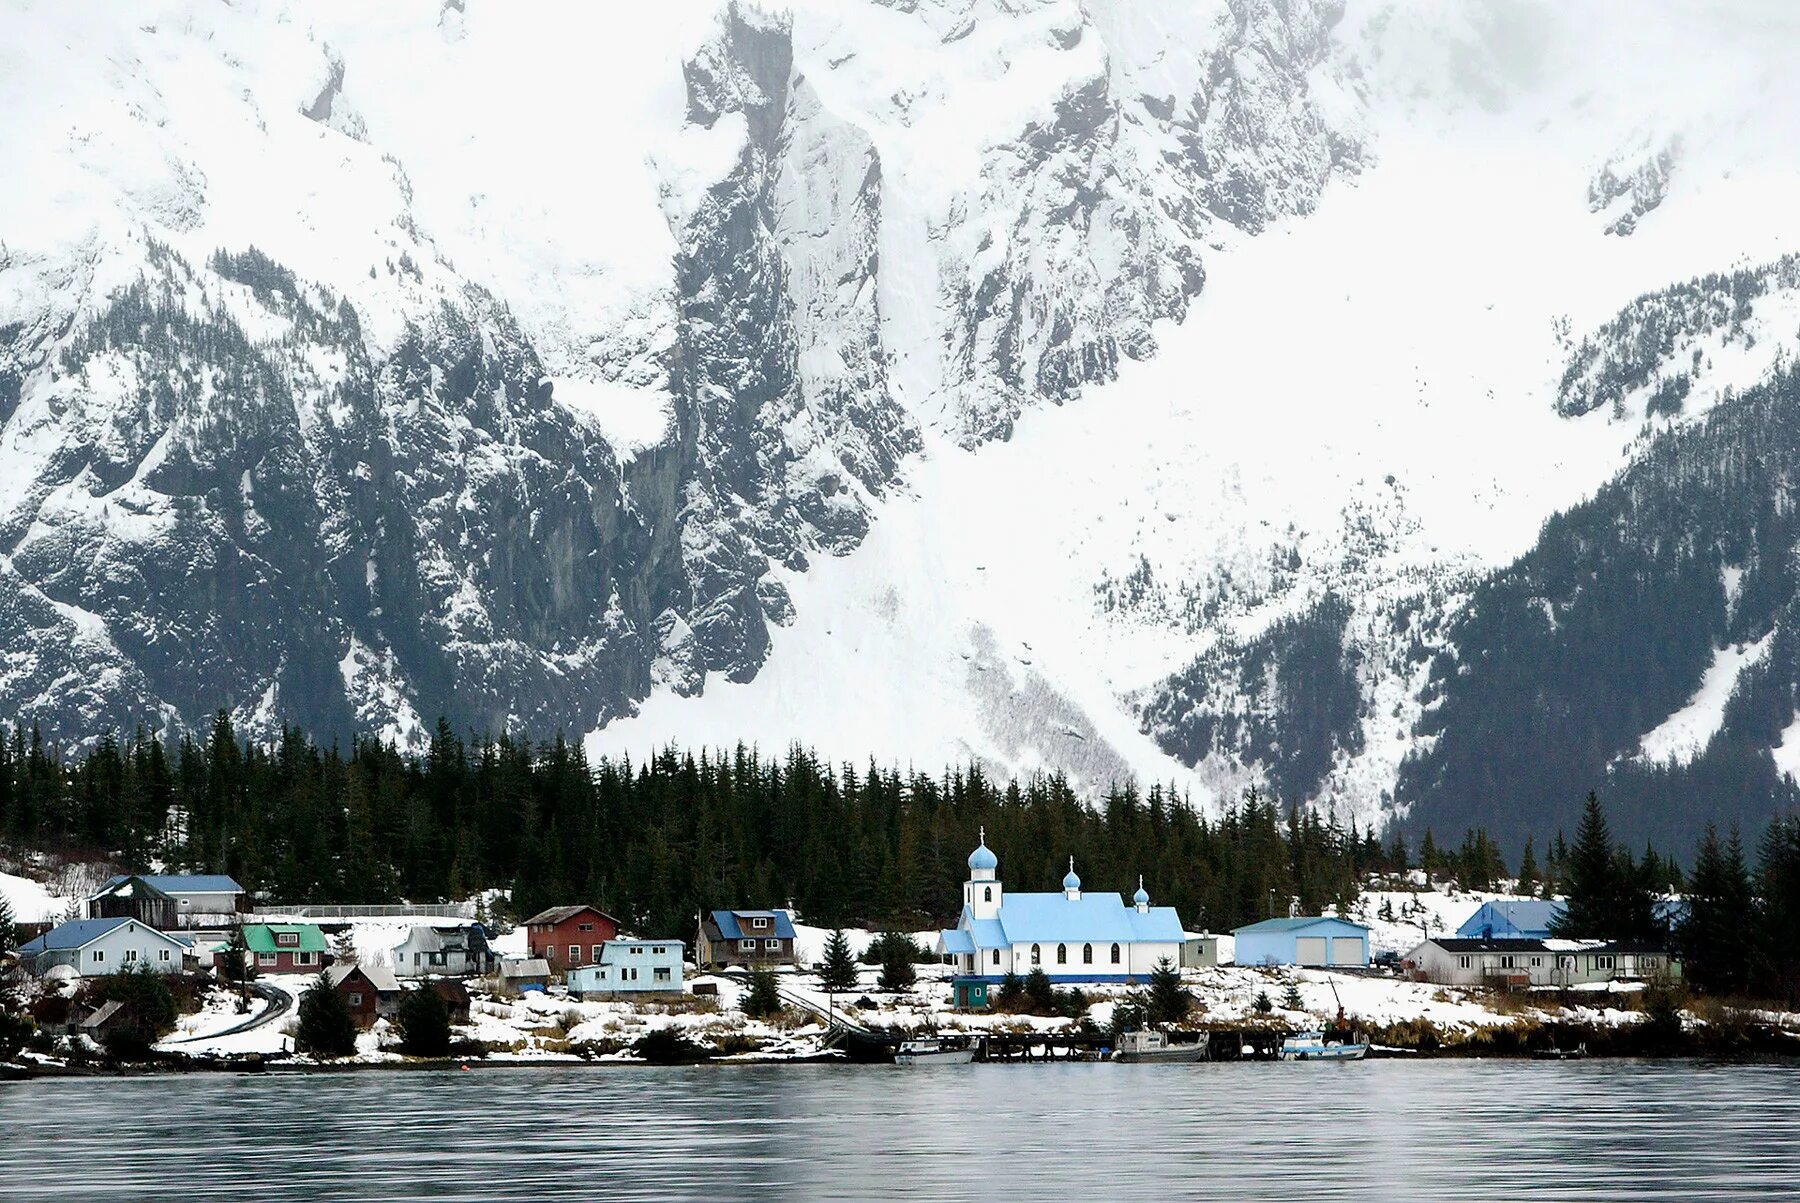 Момент аляска. Кенай (Аляска). Штат Аляска Ситка. США Аляска город Ситка. Ситка Аляска население.